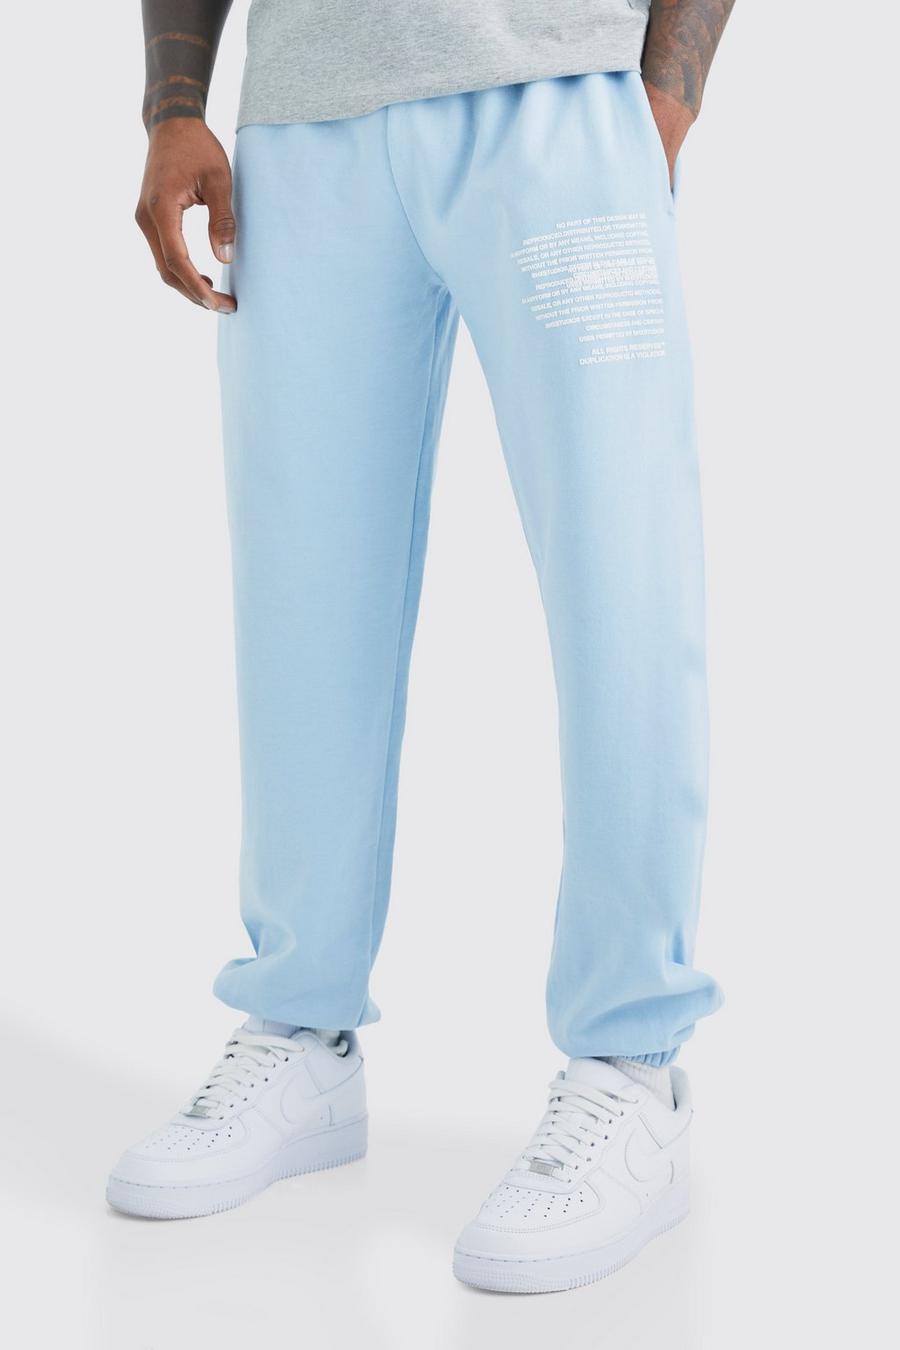 Pantalón deportivo con estampado gráfico de texto, Light blue